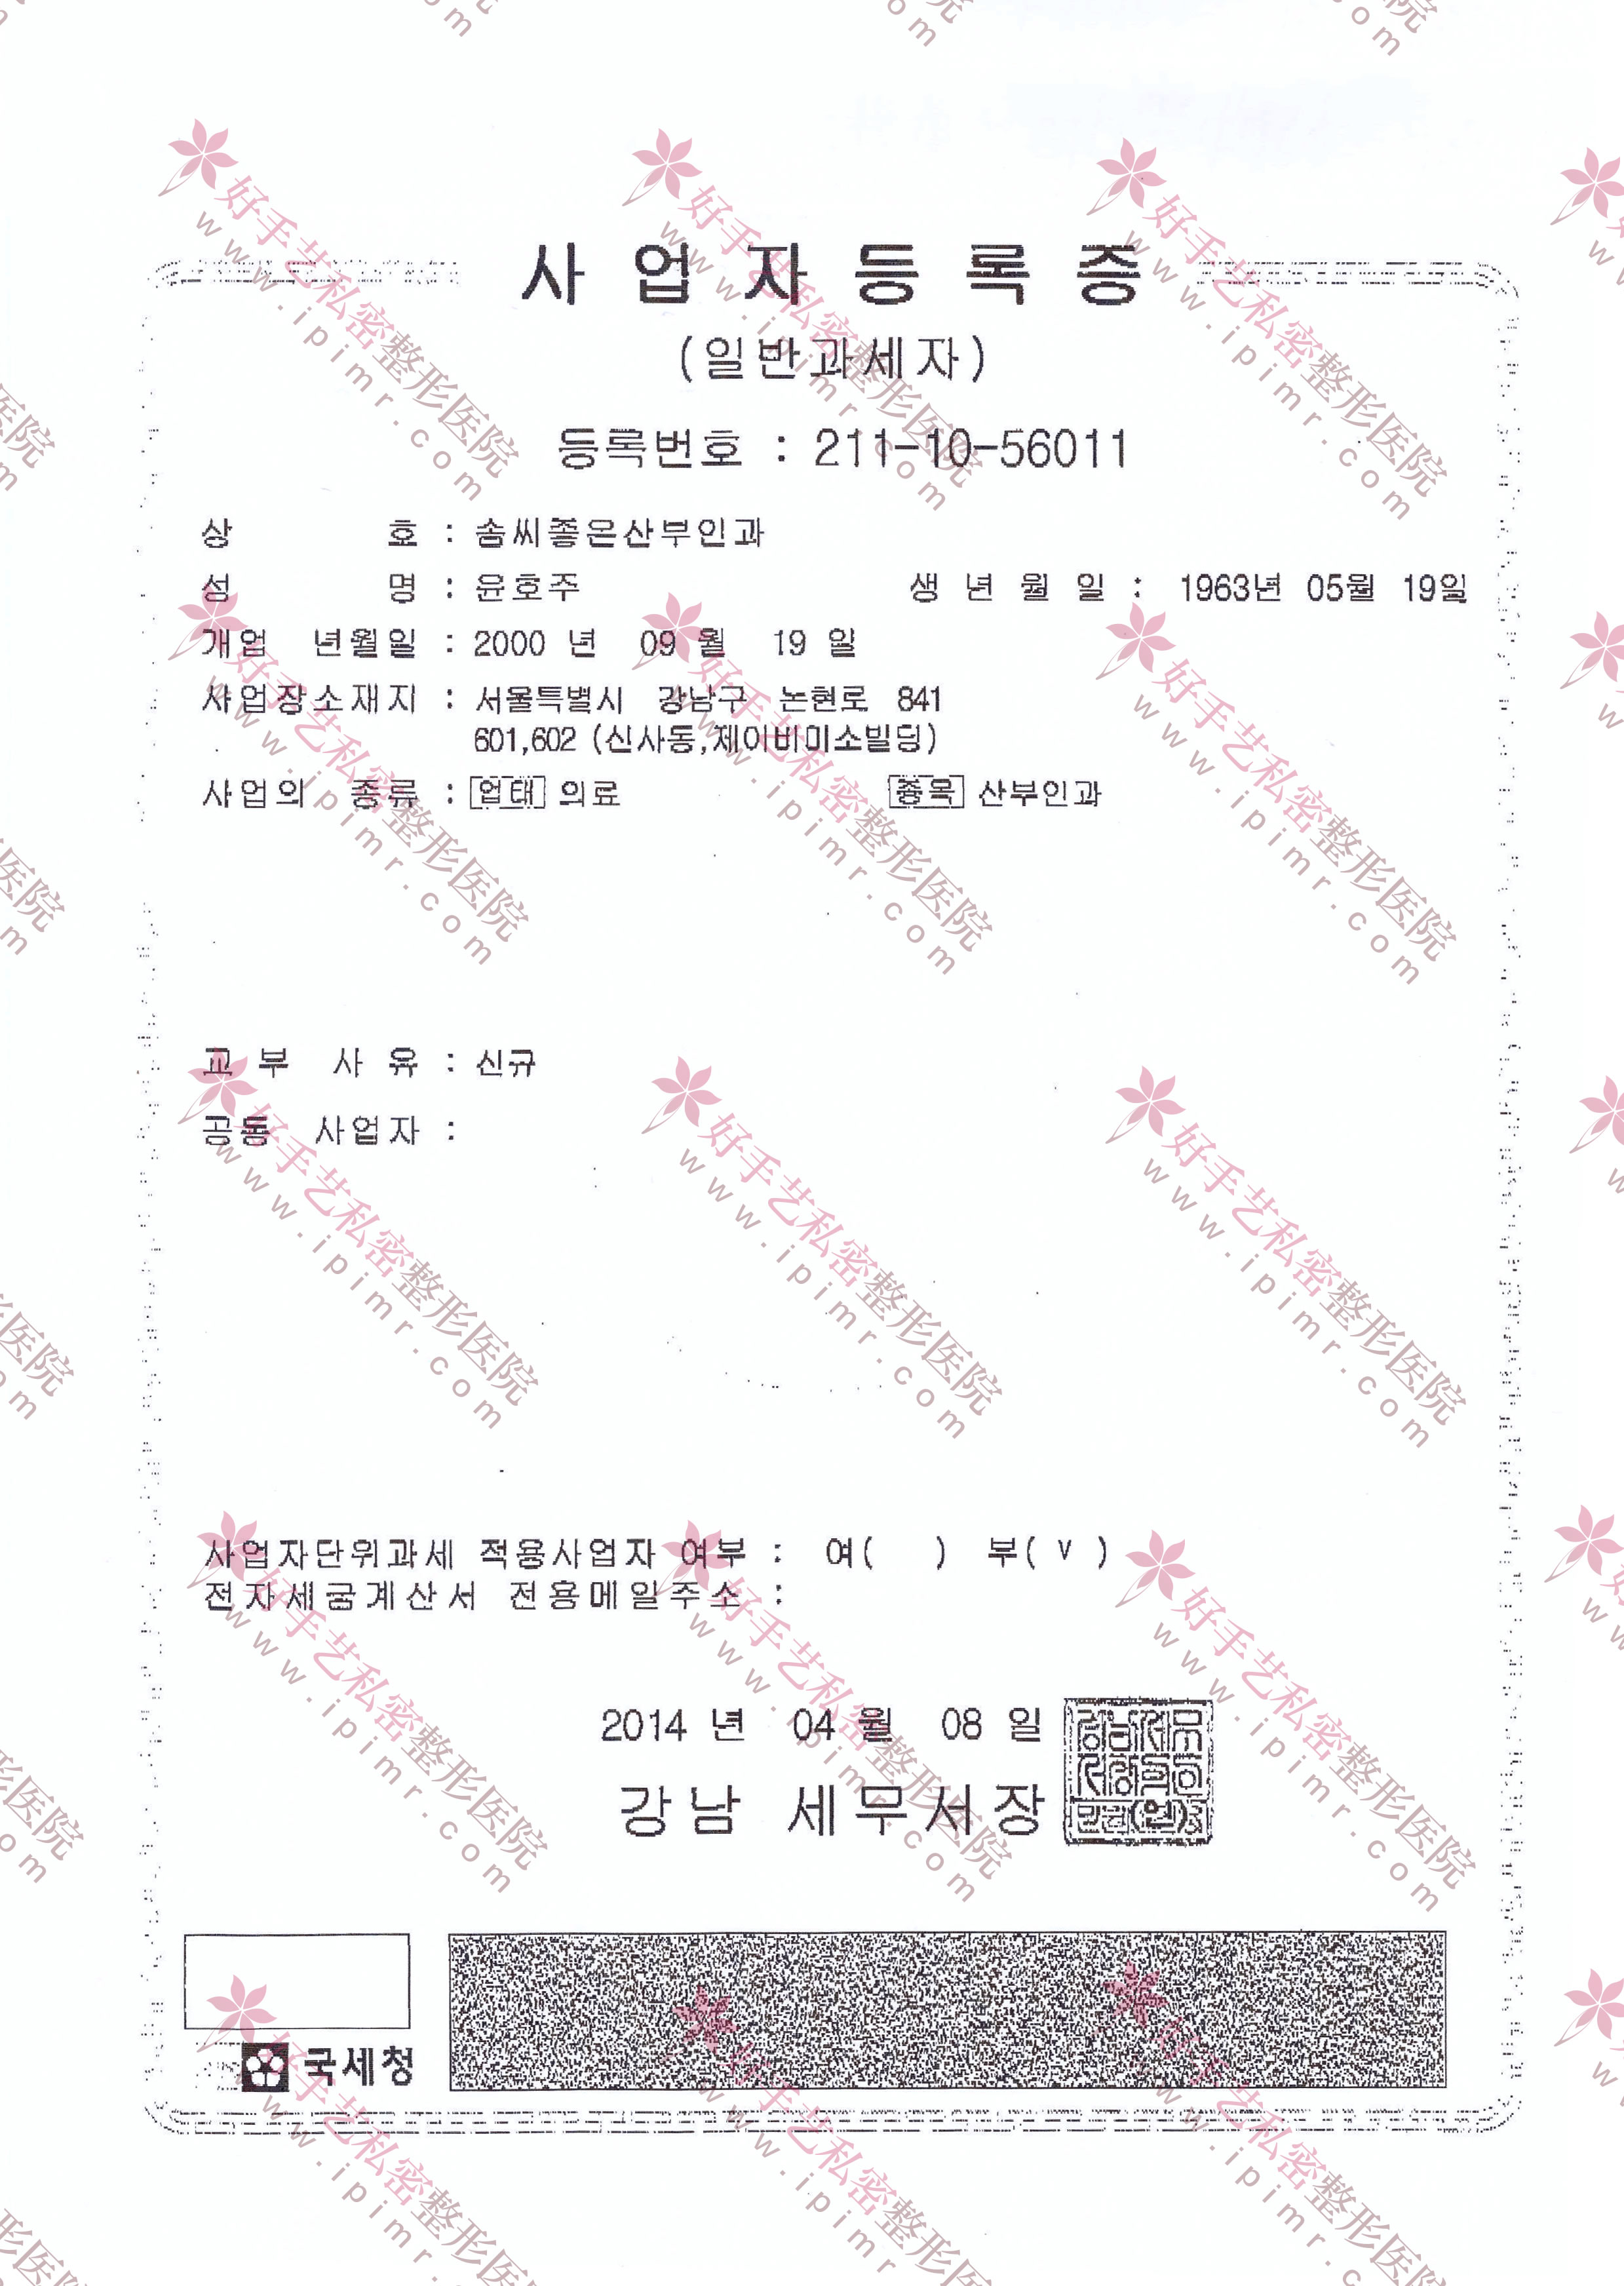 韓國事業者登陸證